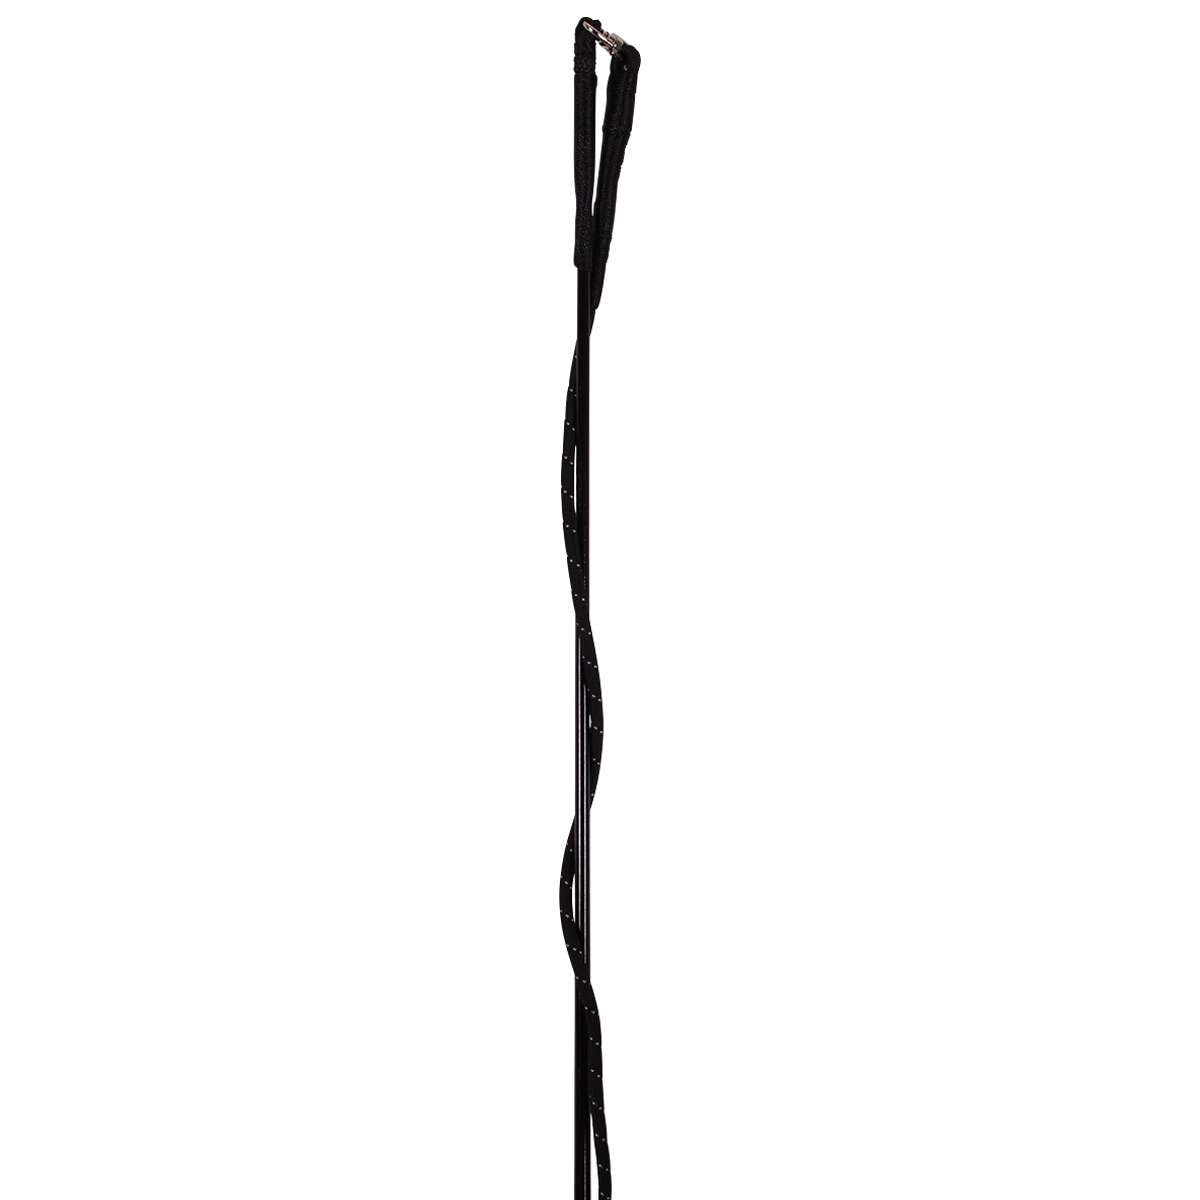 Longeerzweep Lammert Haanstra Coloured Zwart, 200 cm in zwart